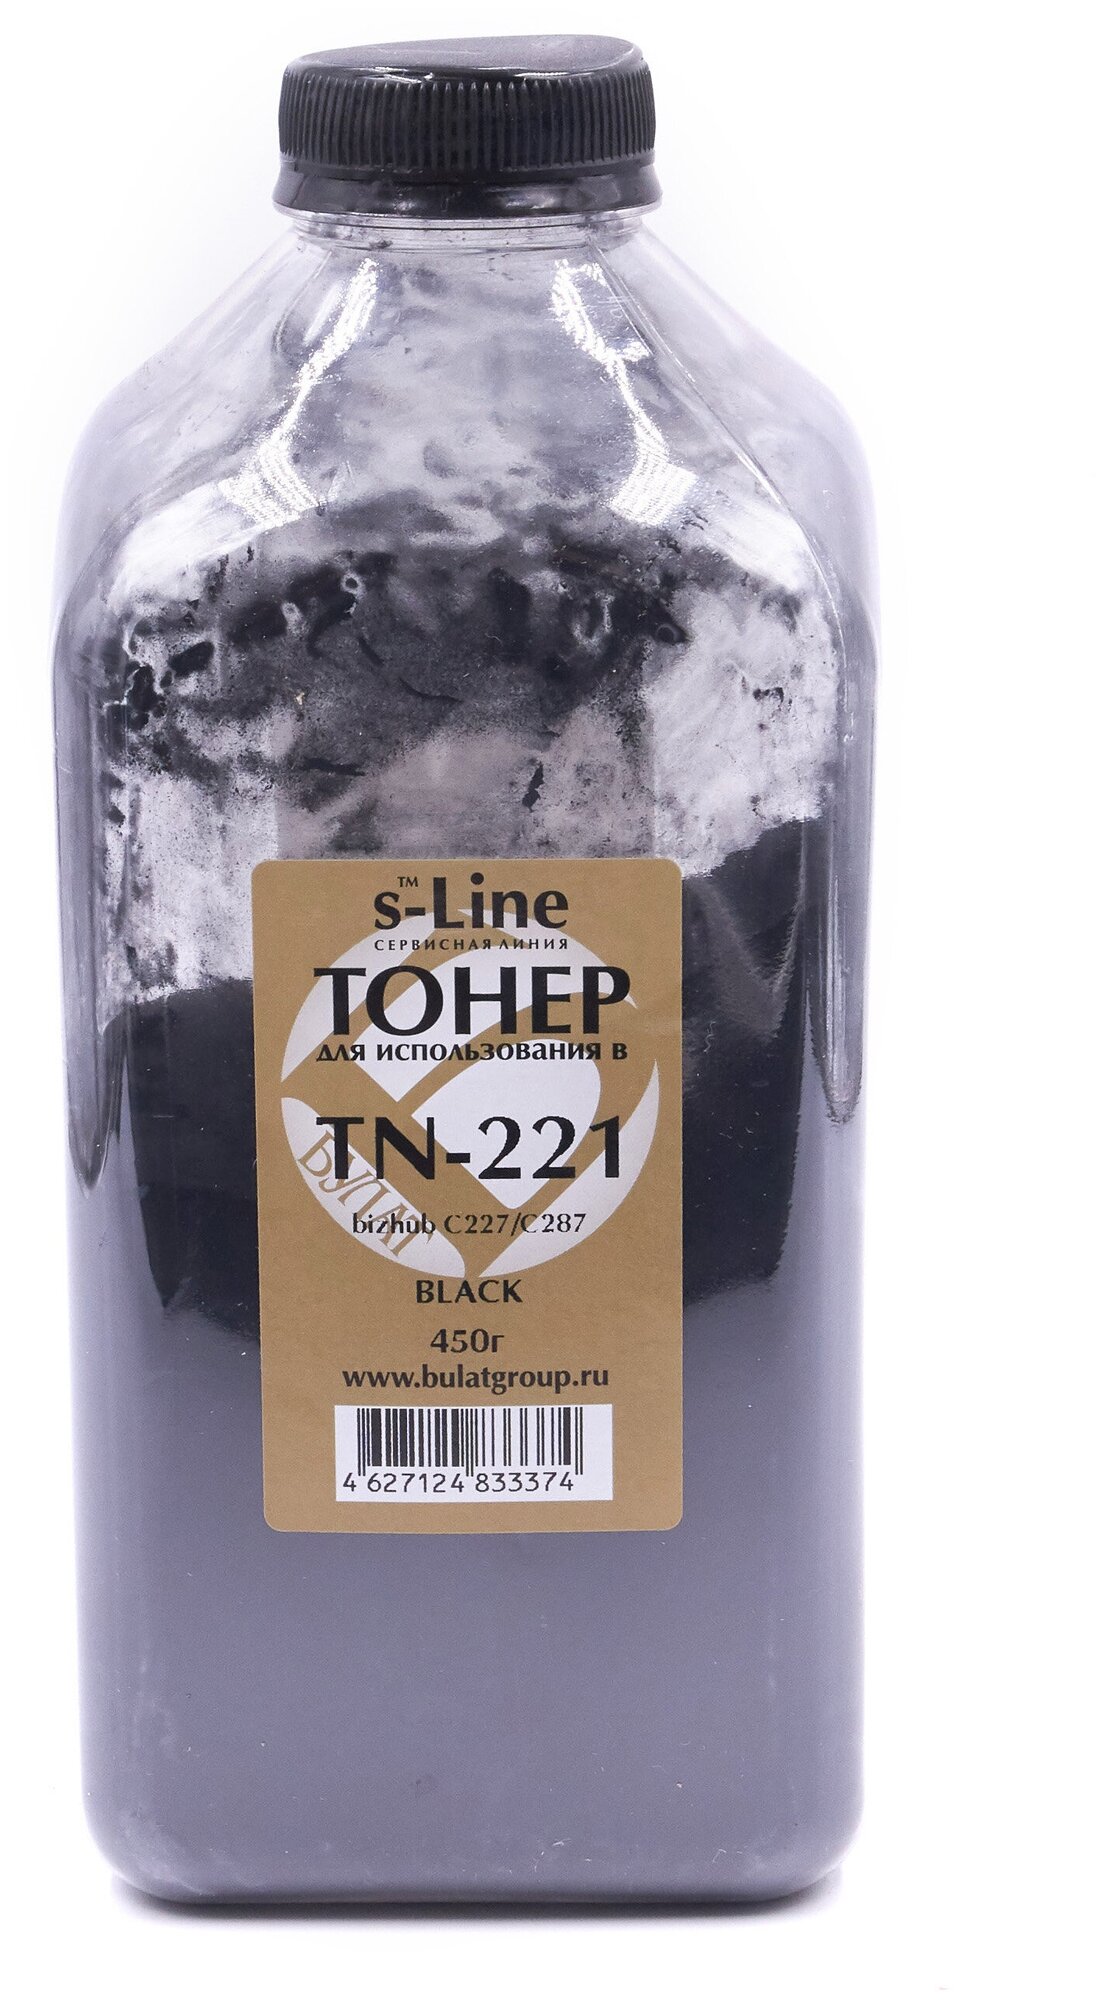 Тонер с девелопером булат s-Line TN-221K для Konica Minolta bizhub C227 (Чёрный, банка 450г.)